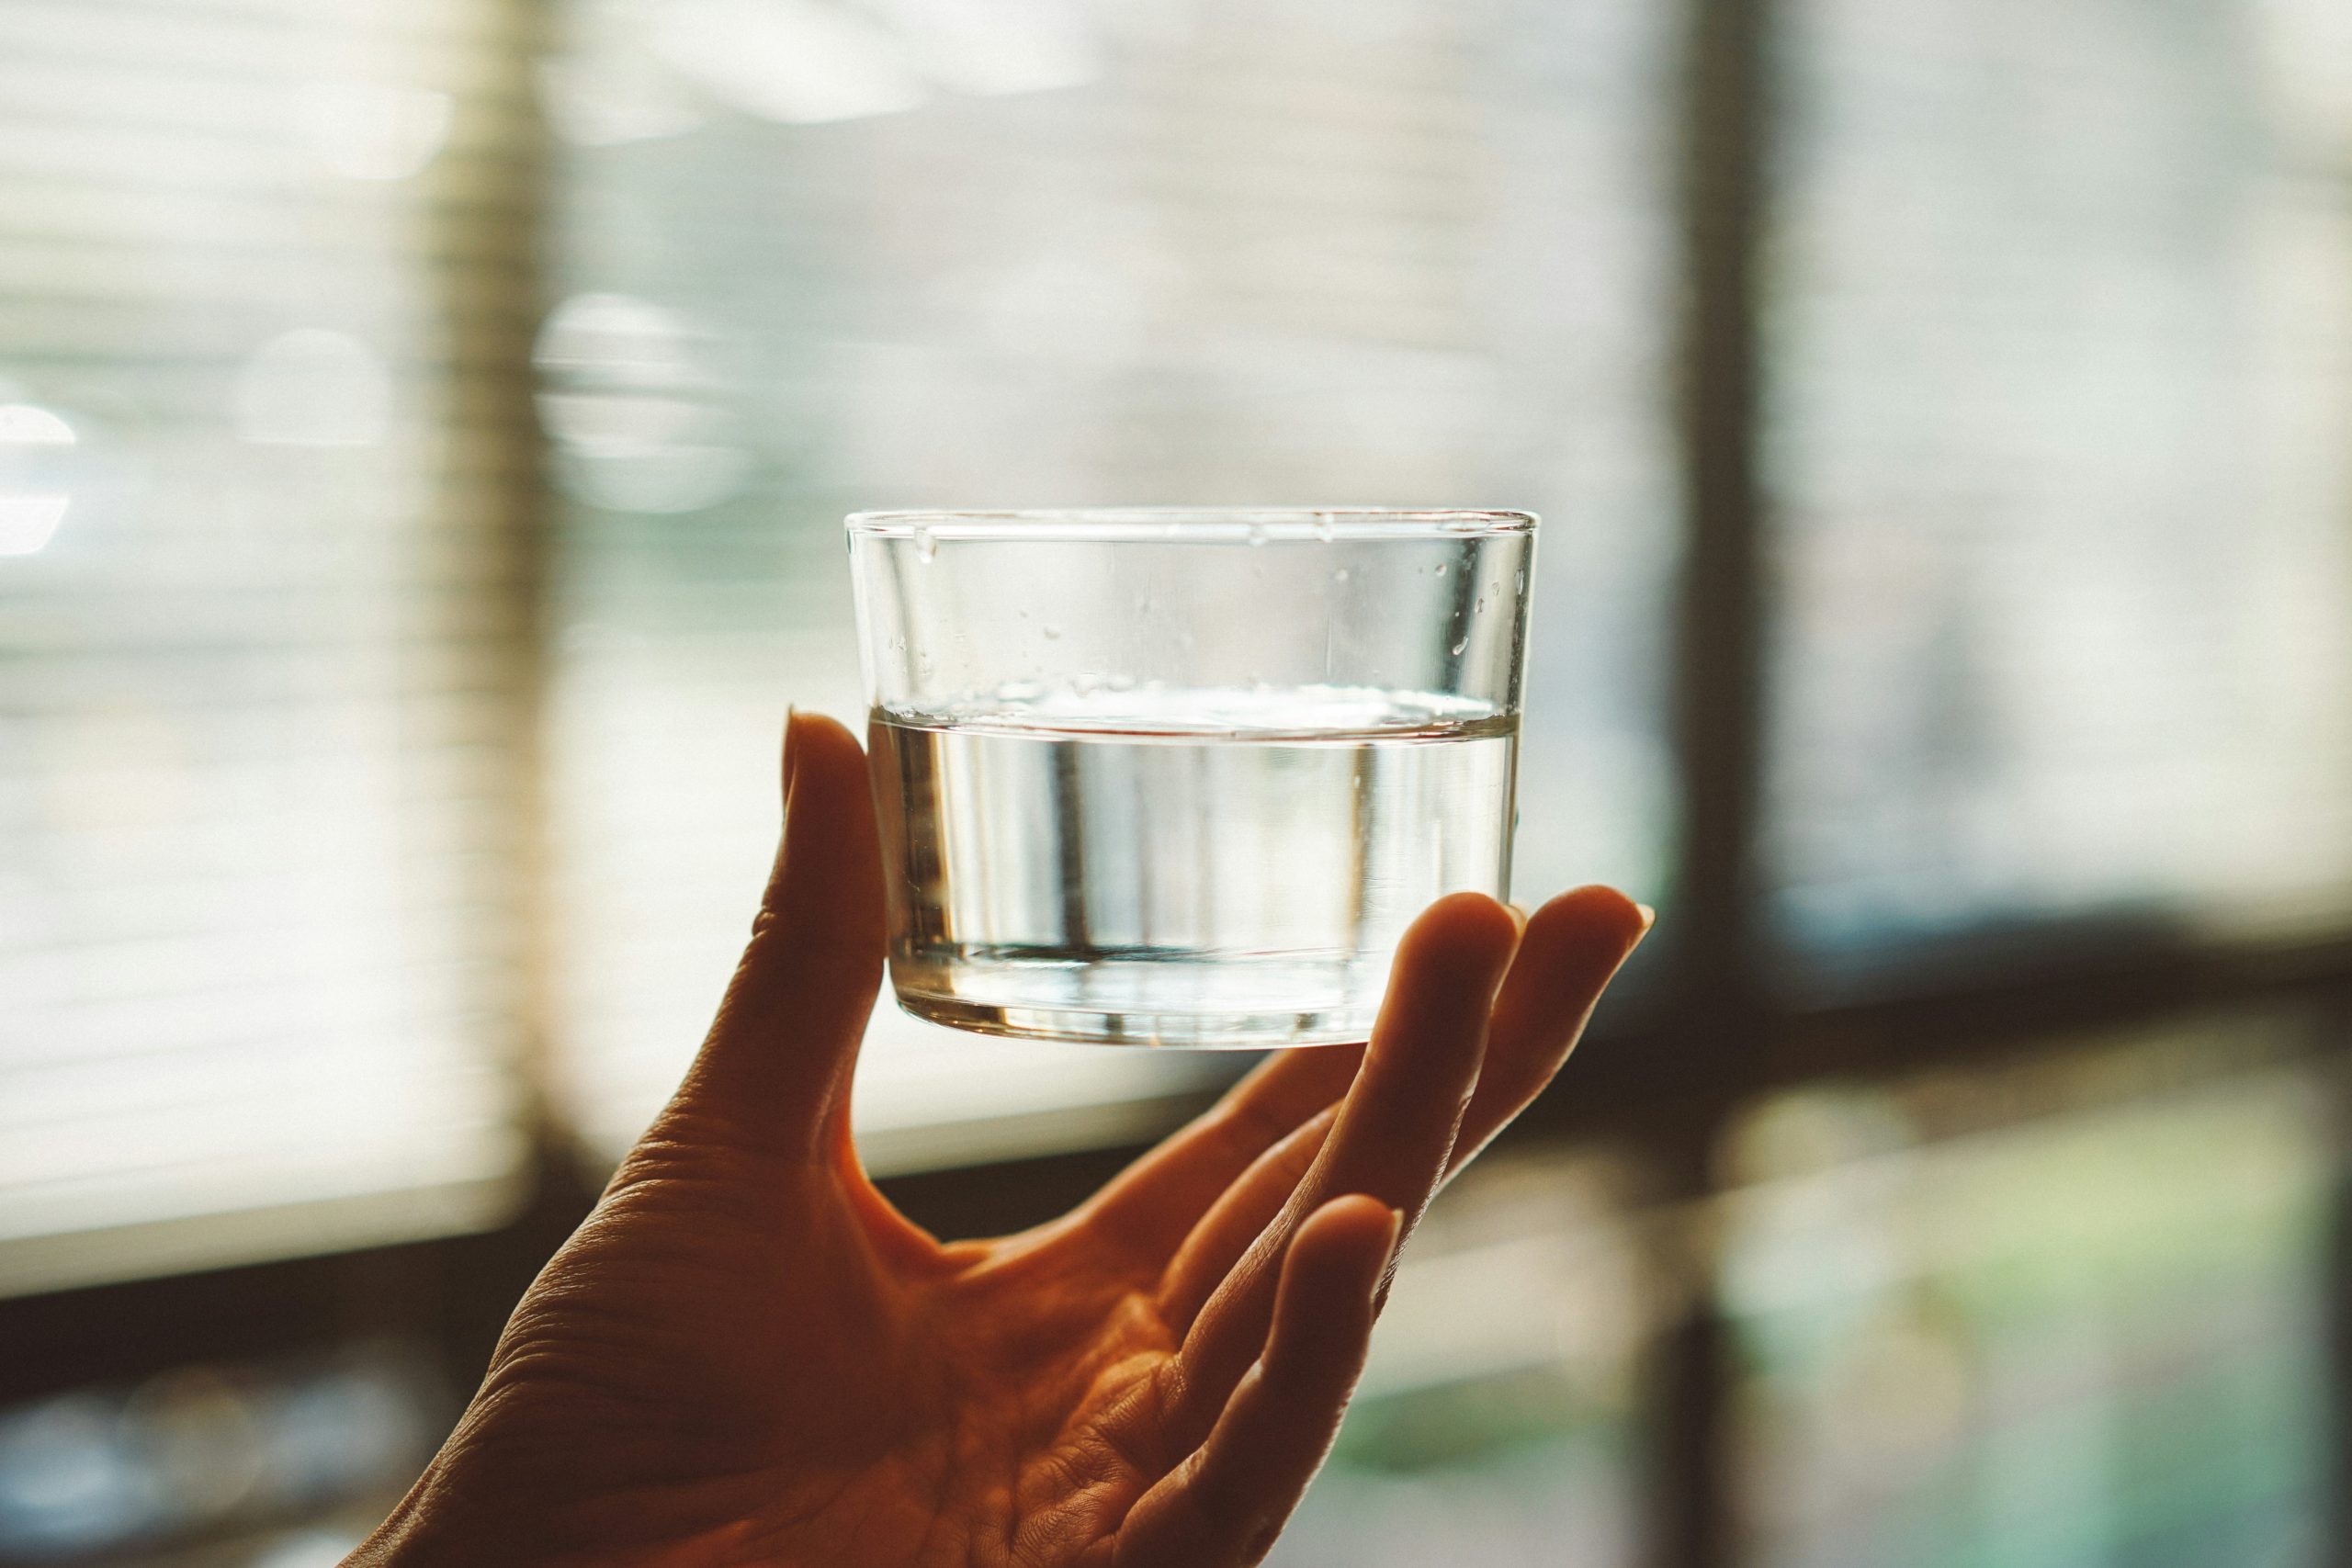 Ειδικός προειδοποιεί: Το νερό πριν από τον ύπνο μπορεί να βλάψει την υγεία σας